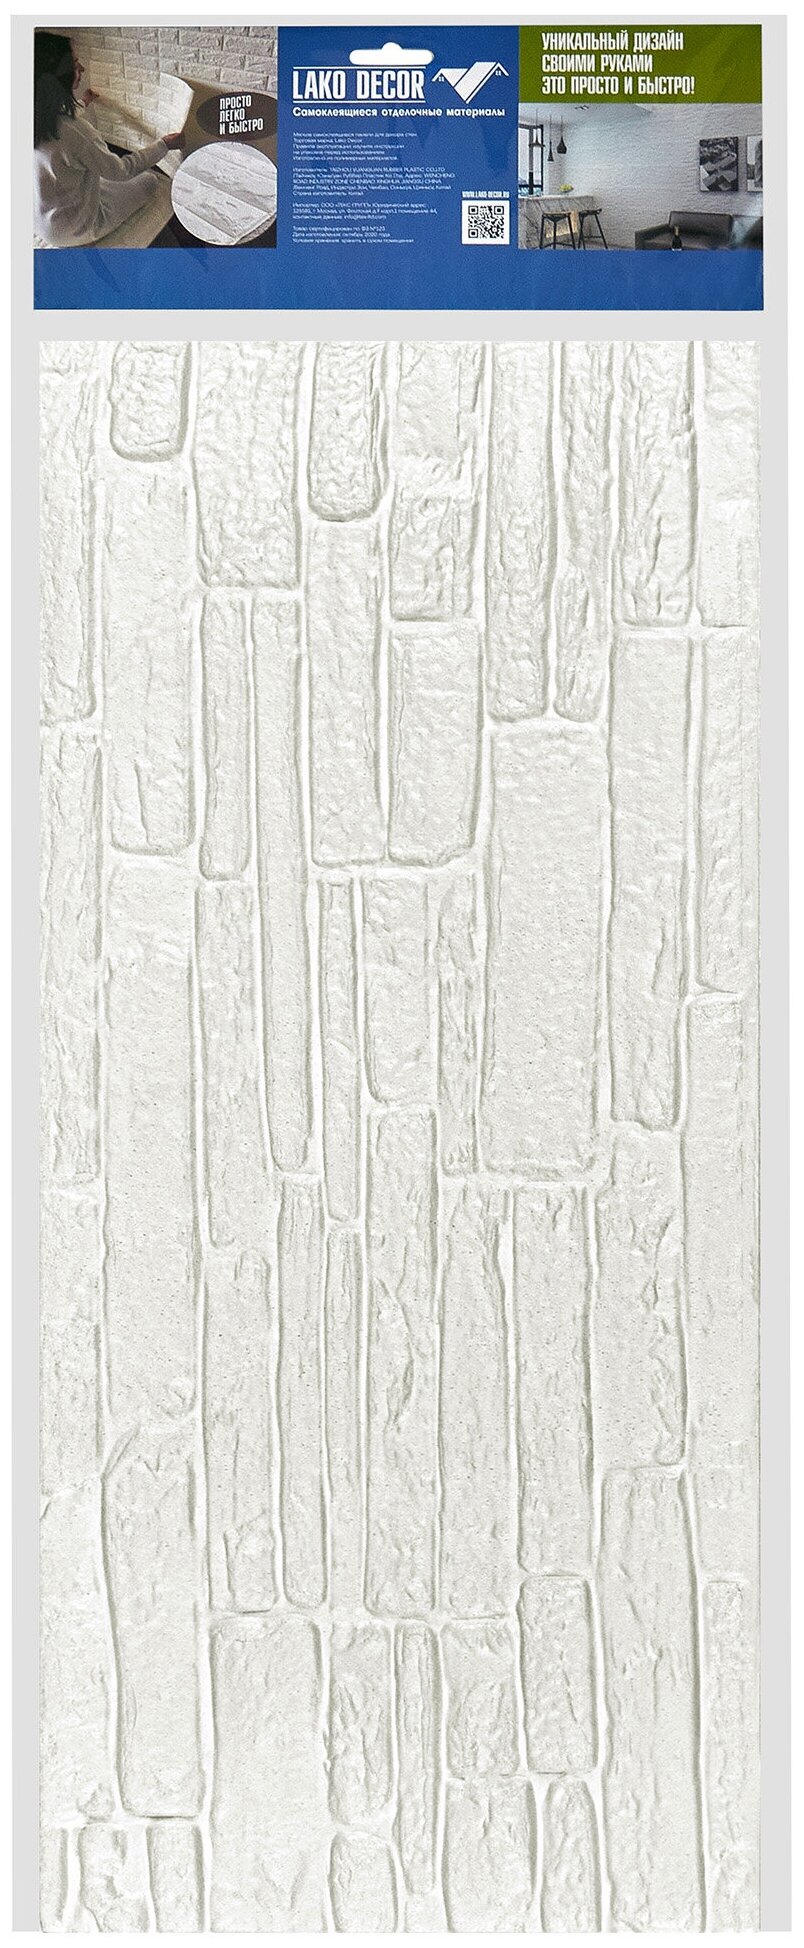 Мягкие самоклеющиеся панели для стен/обои самоклеющиеся/стеновая 3D панель LAKO DECOR/Обработанный камень Серия "А", цвет Белый, 70x60см, толщина 8мм - фотография № 4